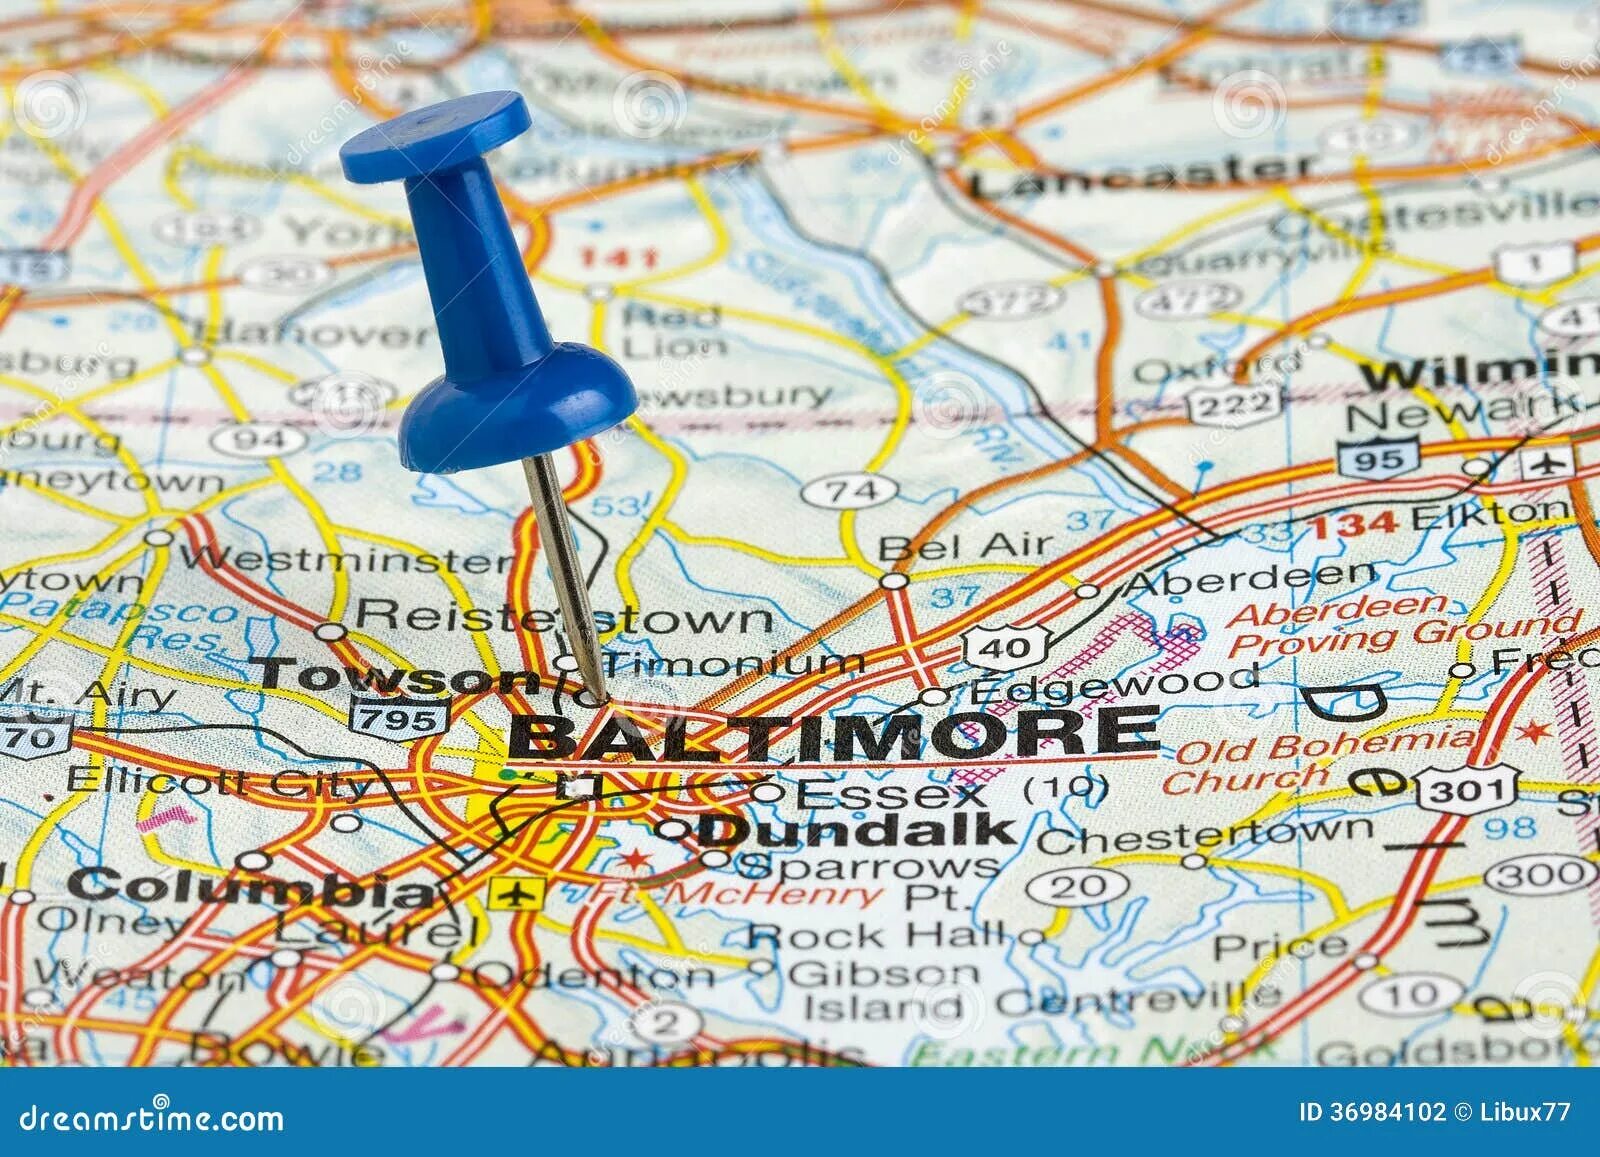 Где находится город балтимор. Балтимор город на карте. Балтимор на карте США. Балтимор штат Мэриленд на карте. Балтимор город в США на карте.